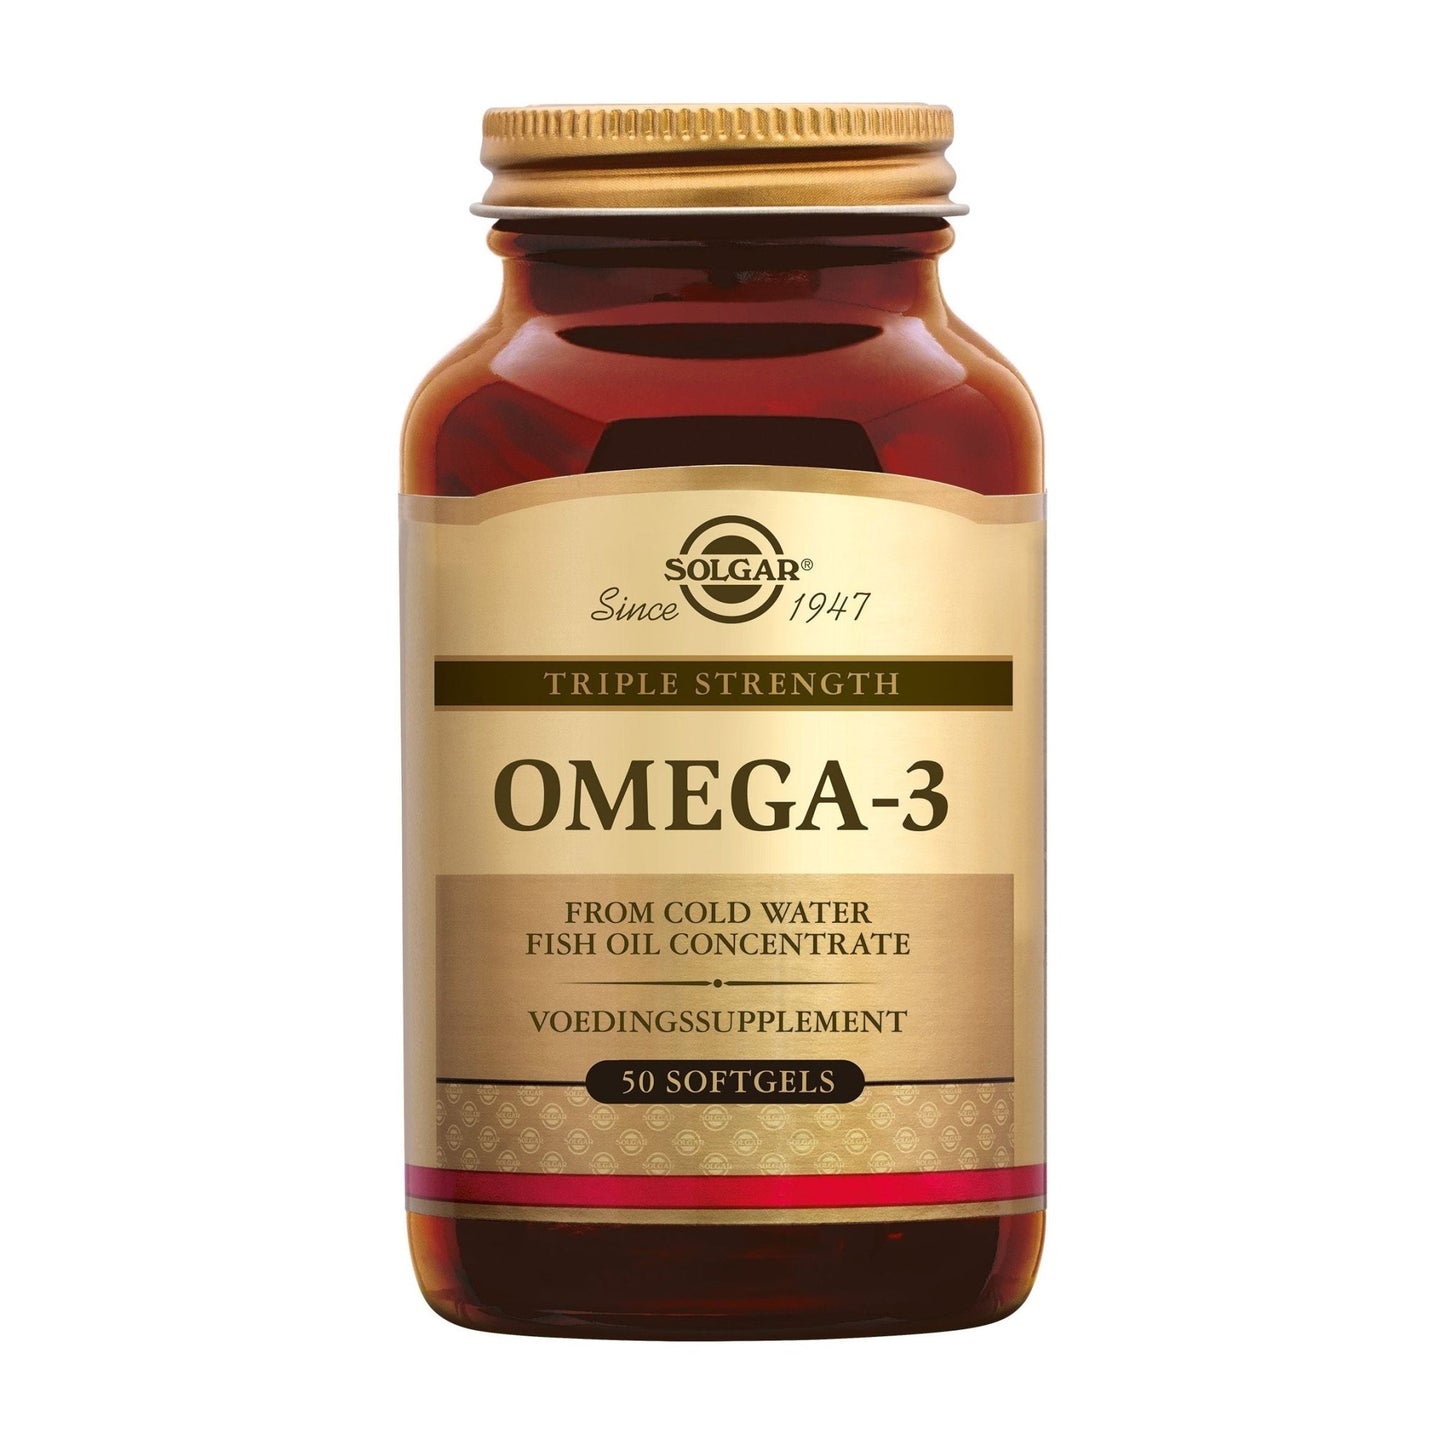 Omega-3 (Visolie) Triple Strength Supplement Solgar   